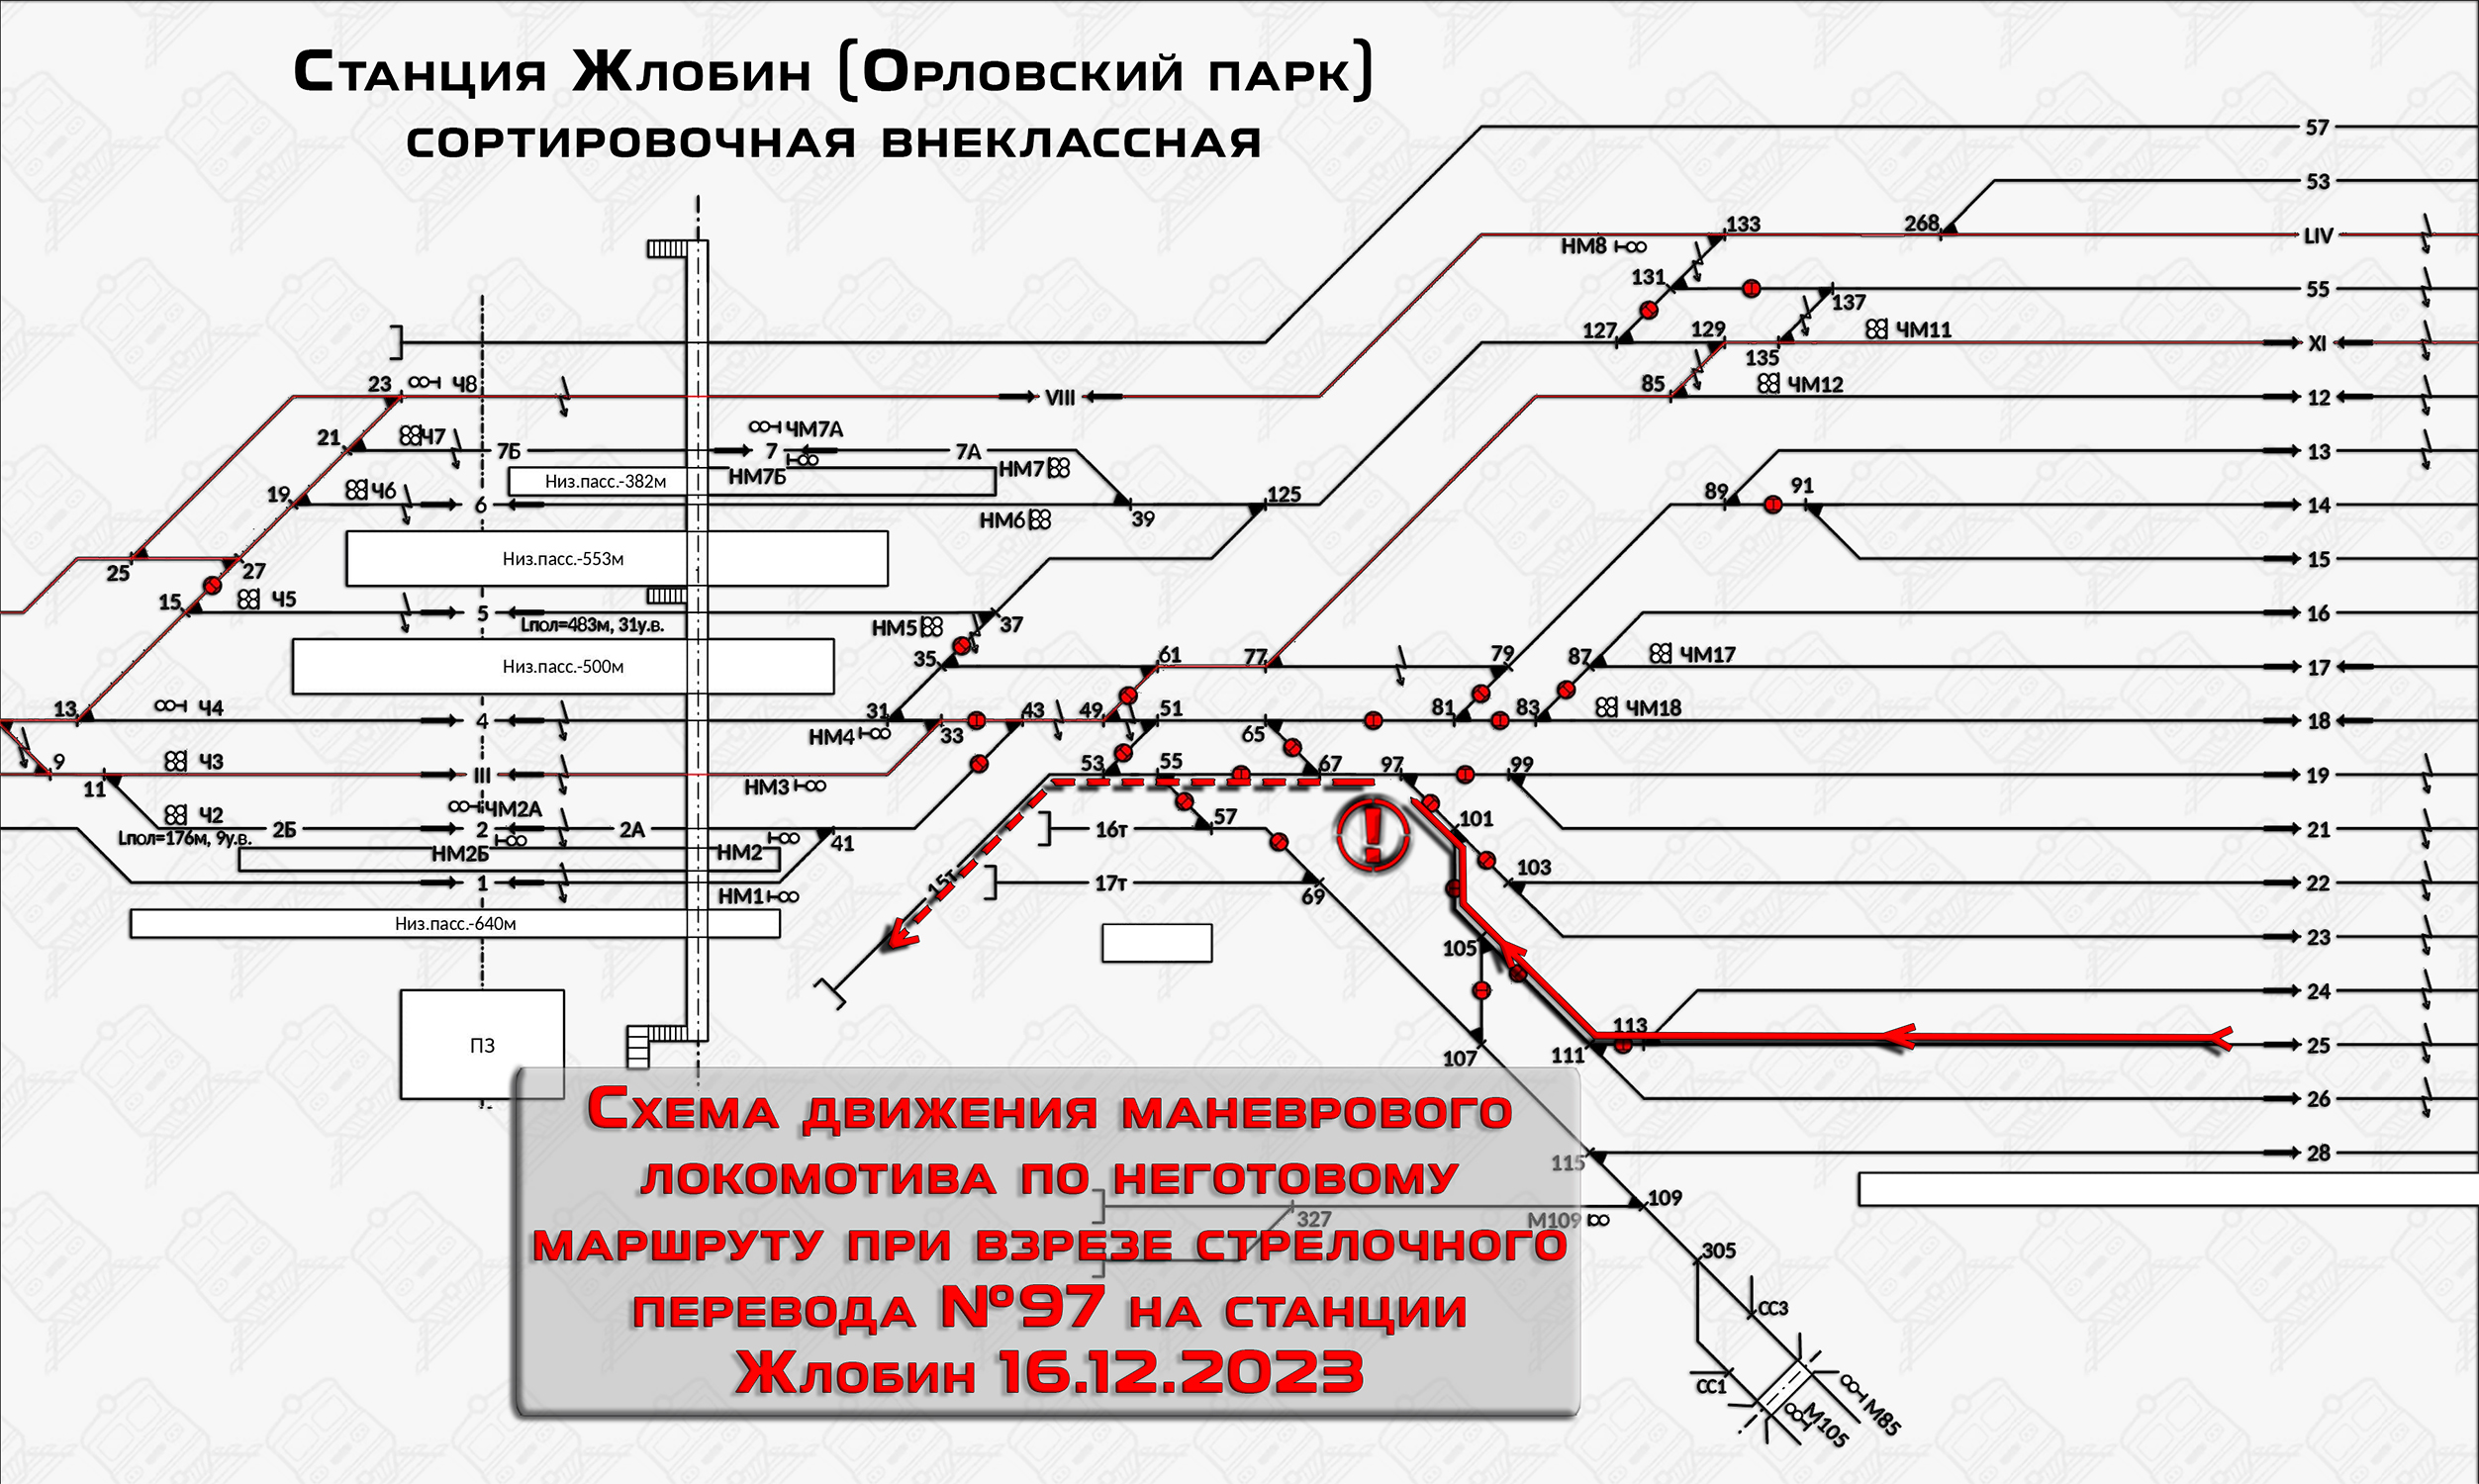 Схема движения маневрового локомотива при взрезе стрелочного перевода №97 на станции Жлобин 16.12.2023